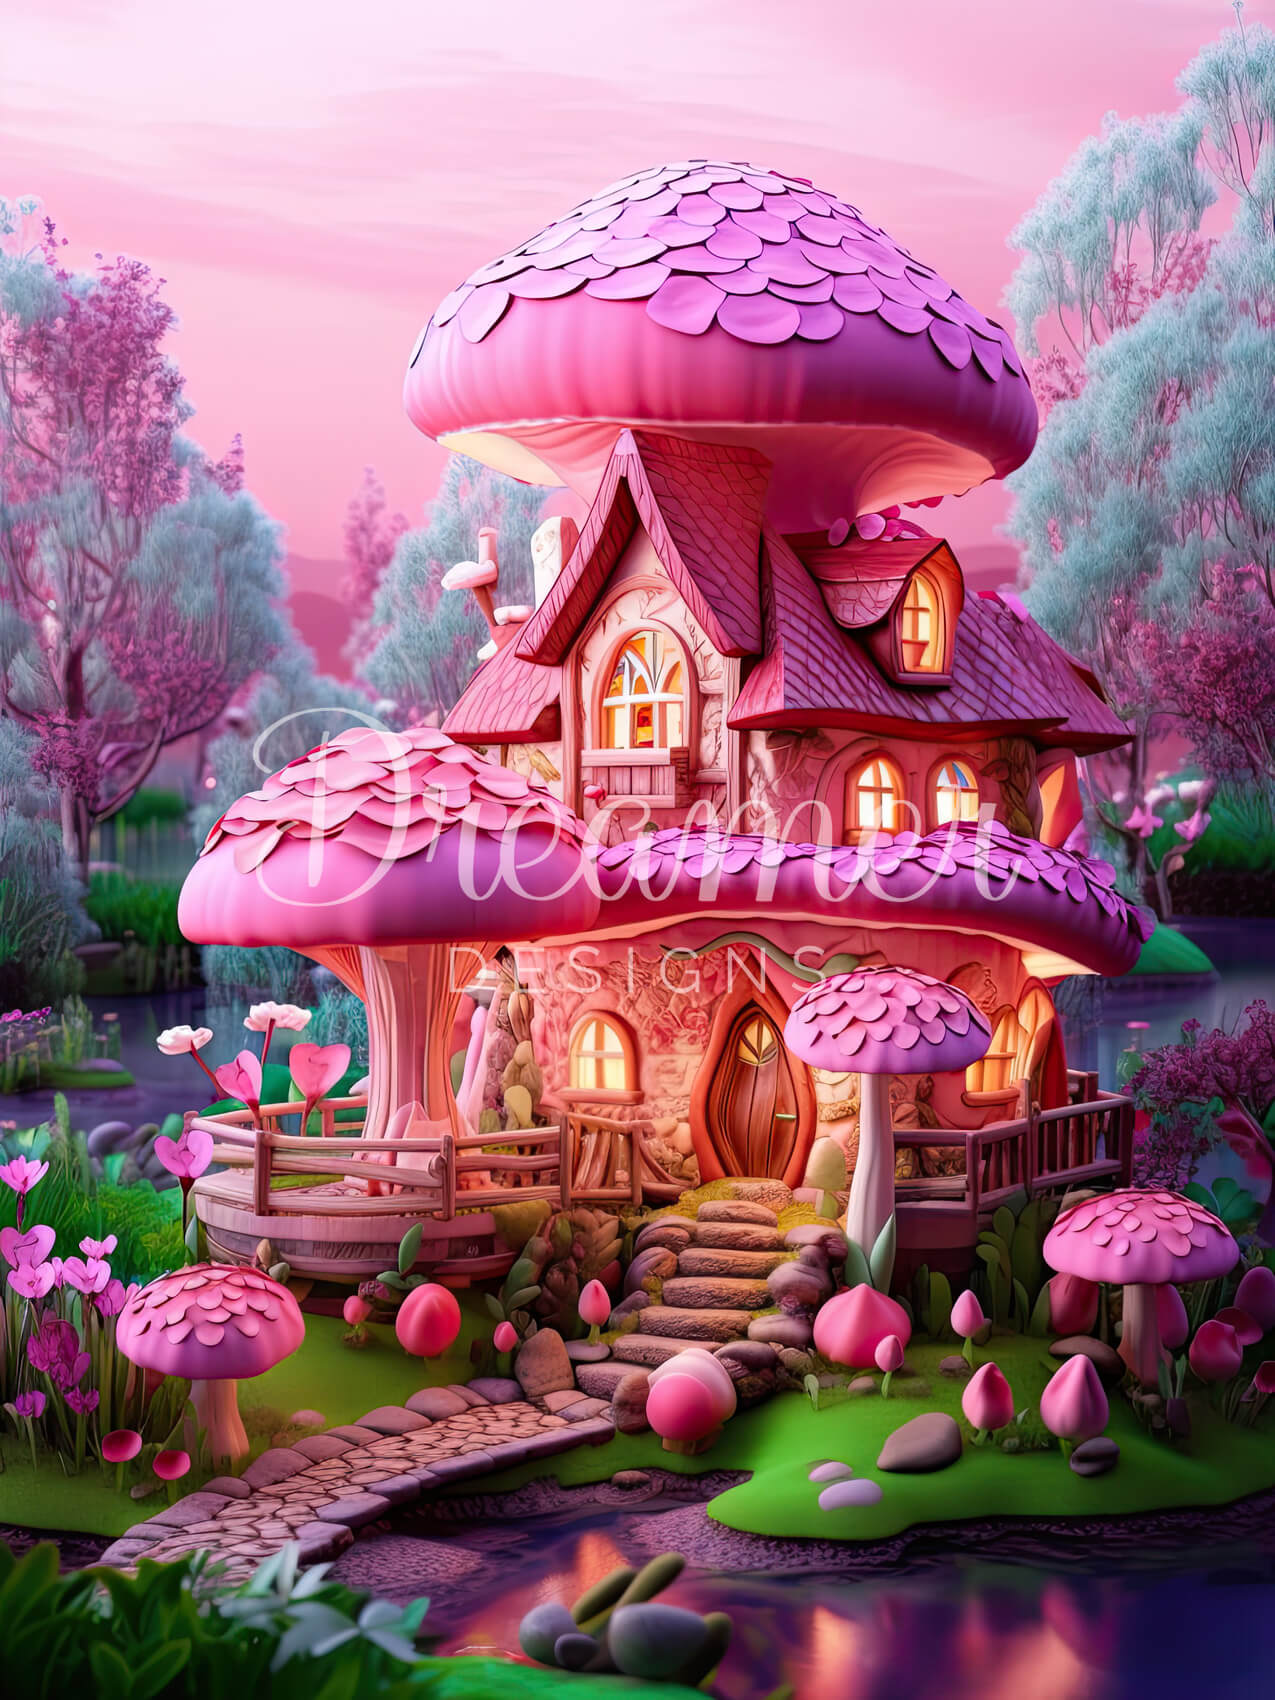 The Art Cottage5d Diamond Painting Mushroom House - Scenic